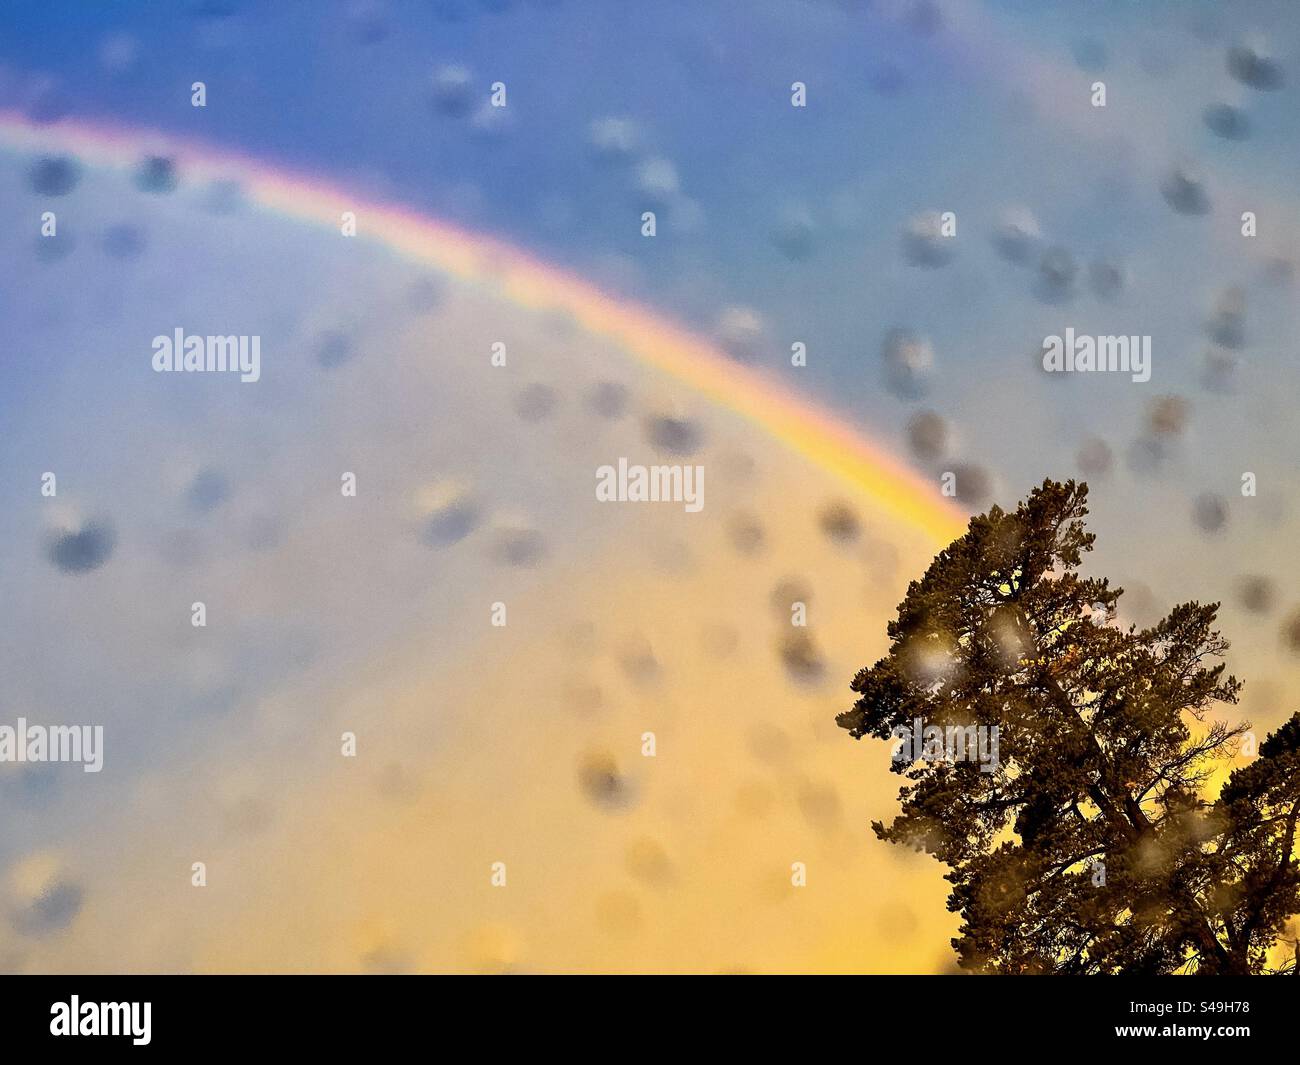 Vista dall'alto dell'arcobaleno dal cielo del tramonto sopra un albero visto attraverso le gocce di pioggia sul vetro bagnato della finestra. Scenics-natura. Foto Stock